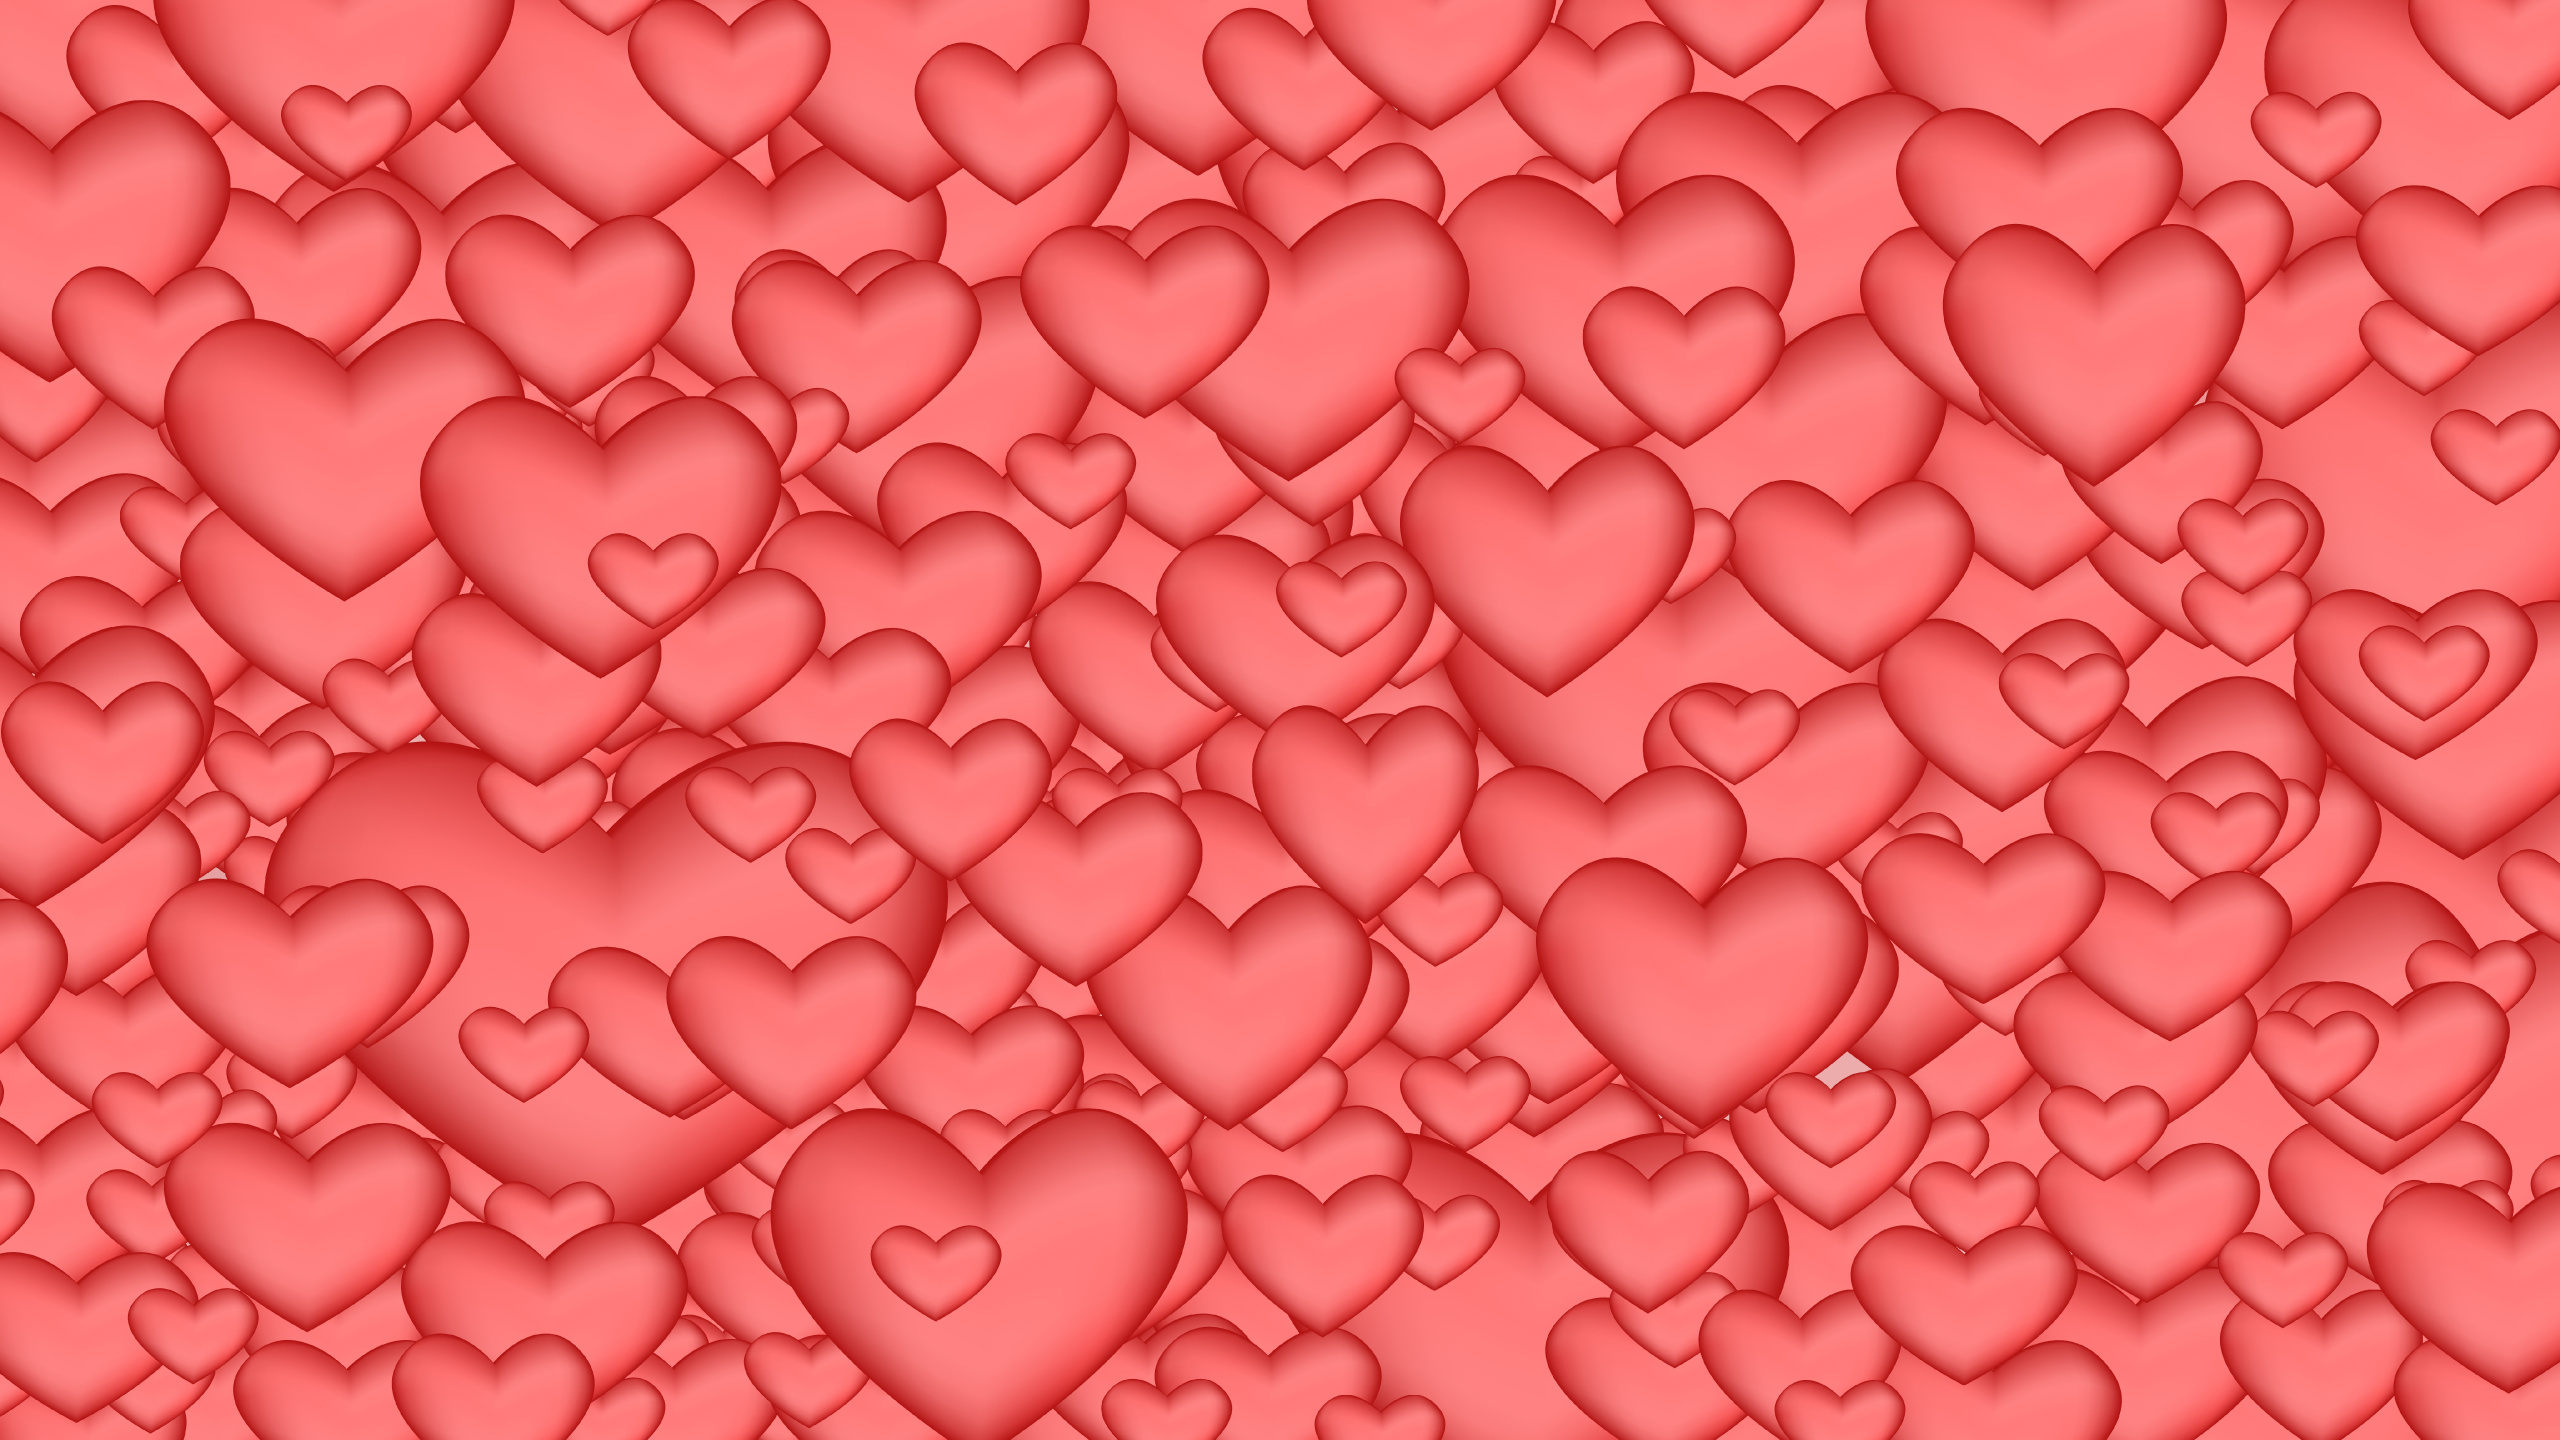 心脏, 粉红色, 红色的, 爱情, 浪漫 壁纸 2560x1440 允许